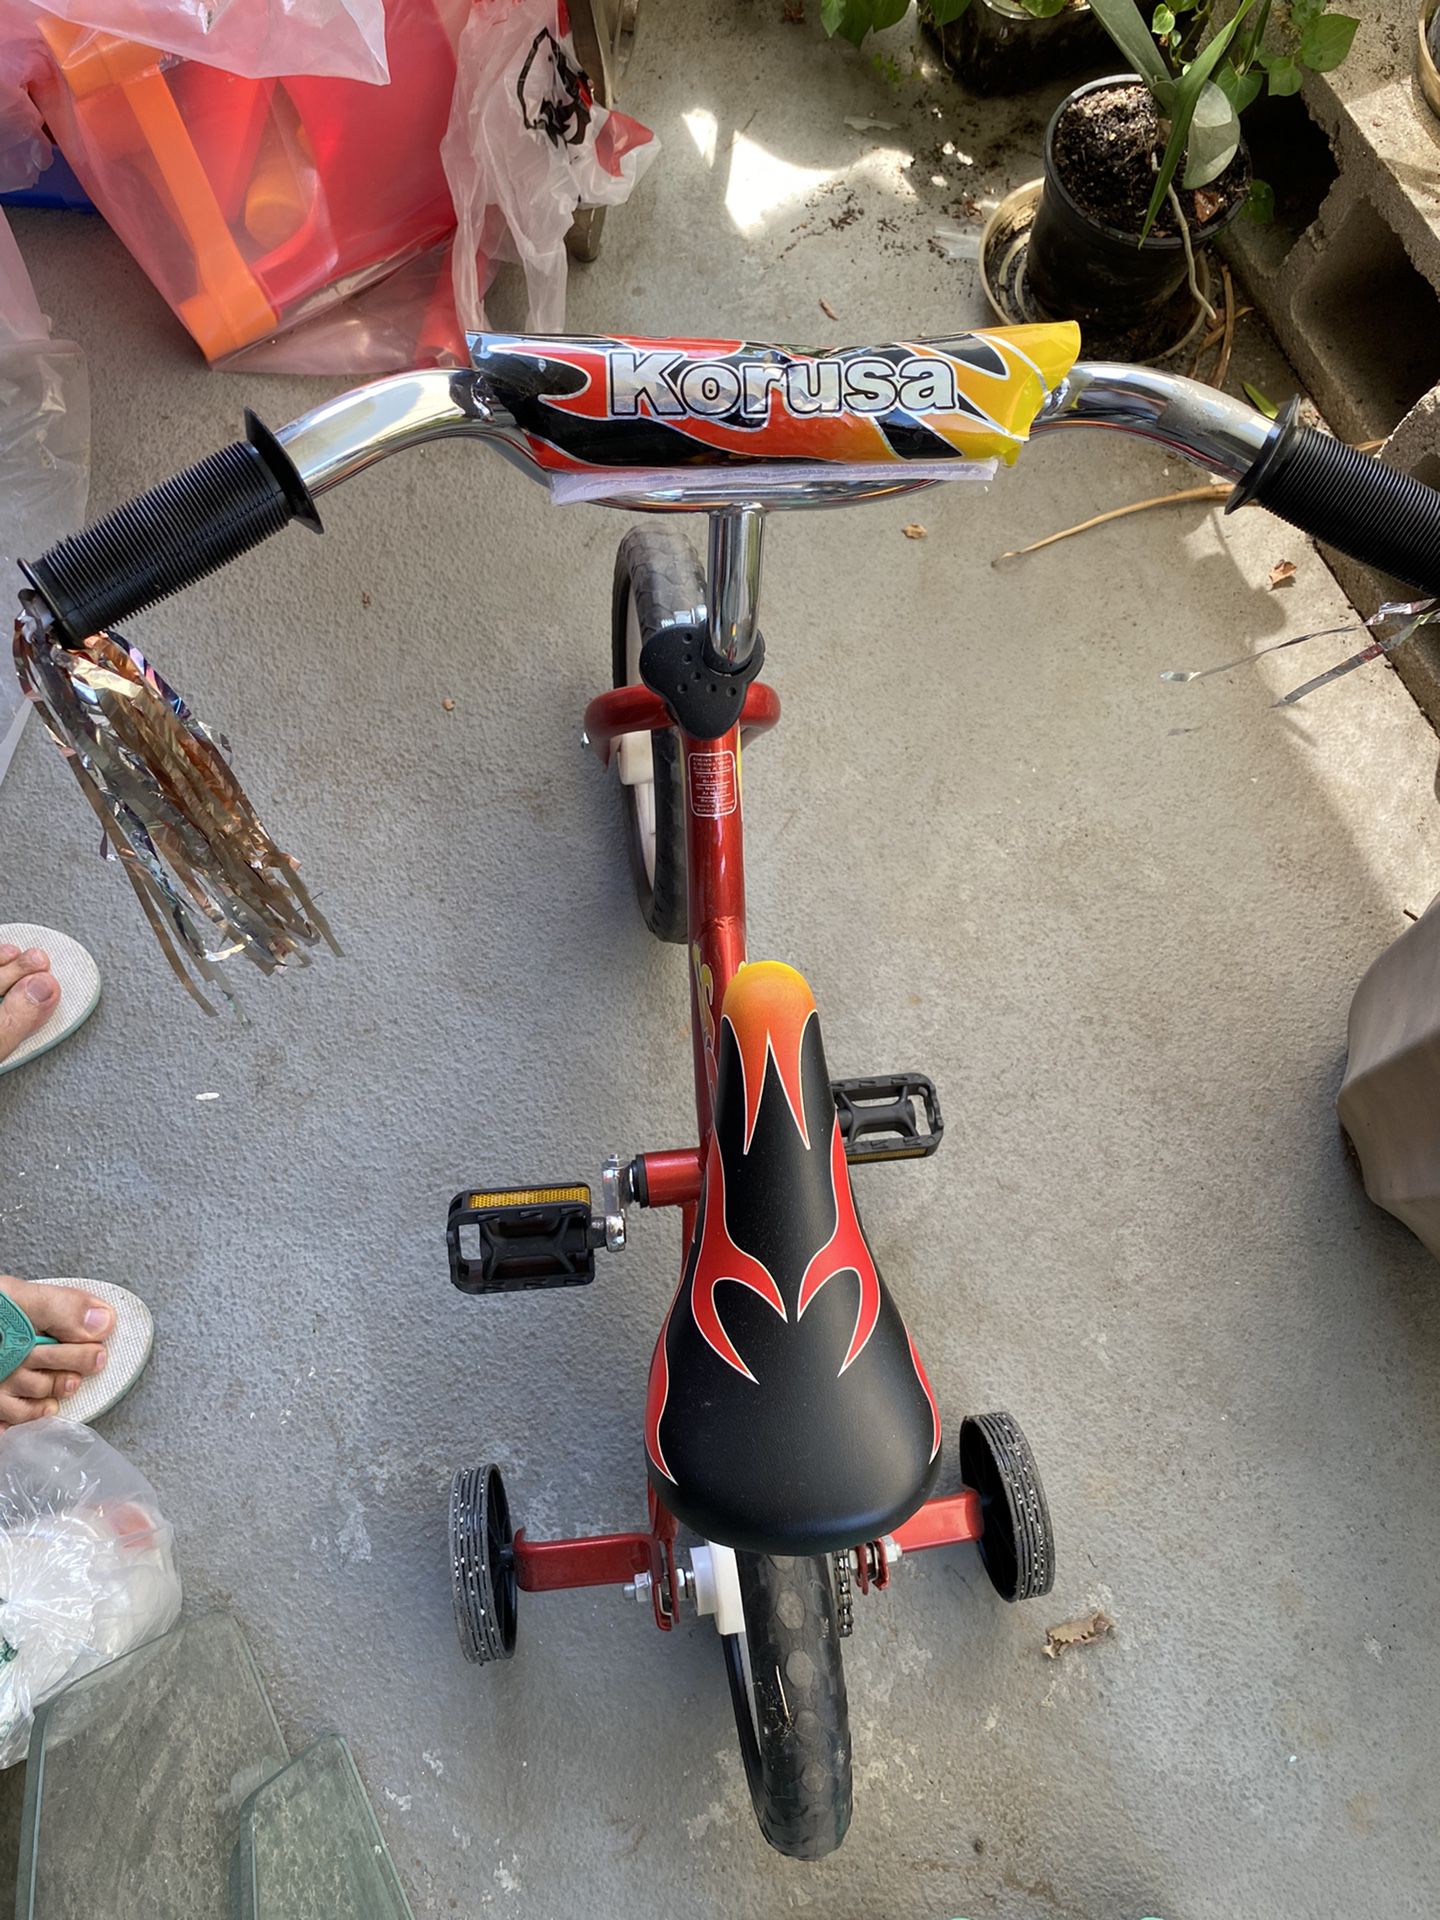 korusa bike for kid